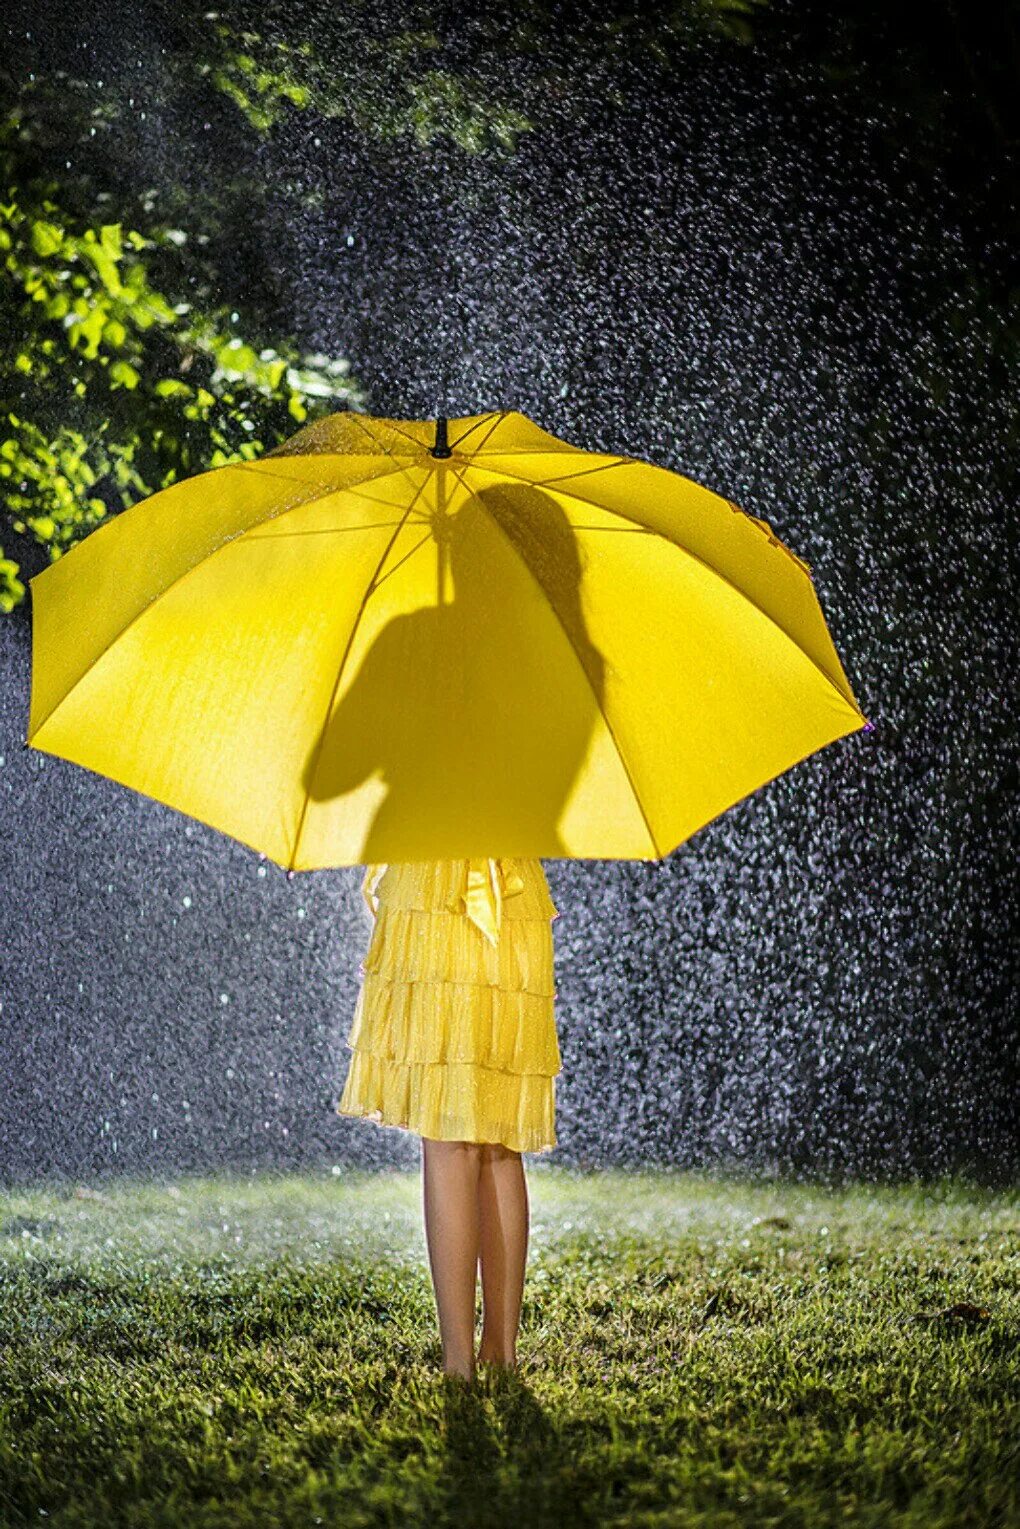 Девушка под зонтиком. Девушка с зонтиком. Красивый зонт. Девушка с зонтиком под дождем. Девочка под зонтом.